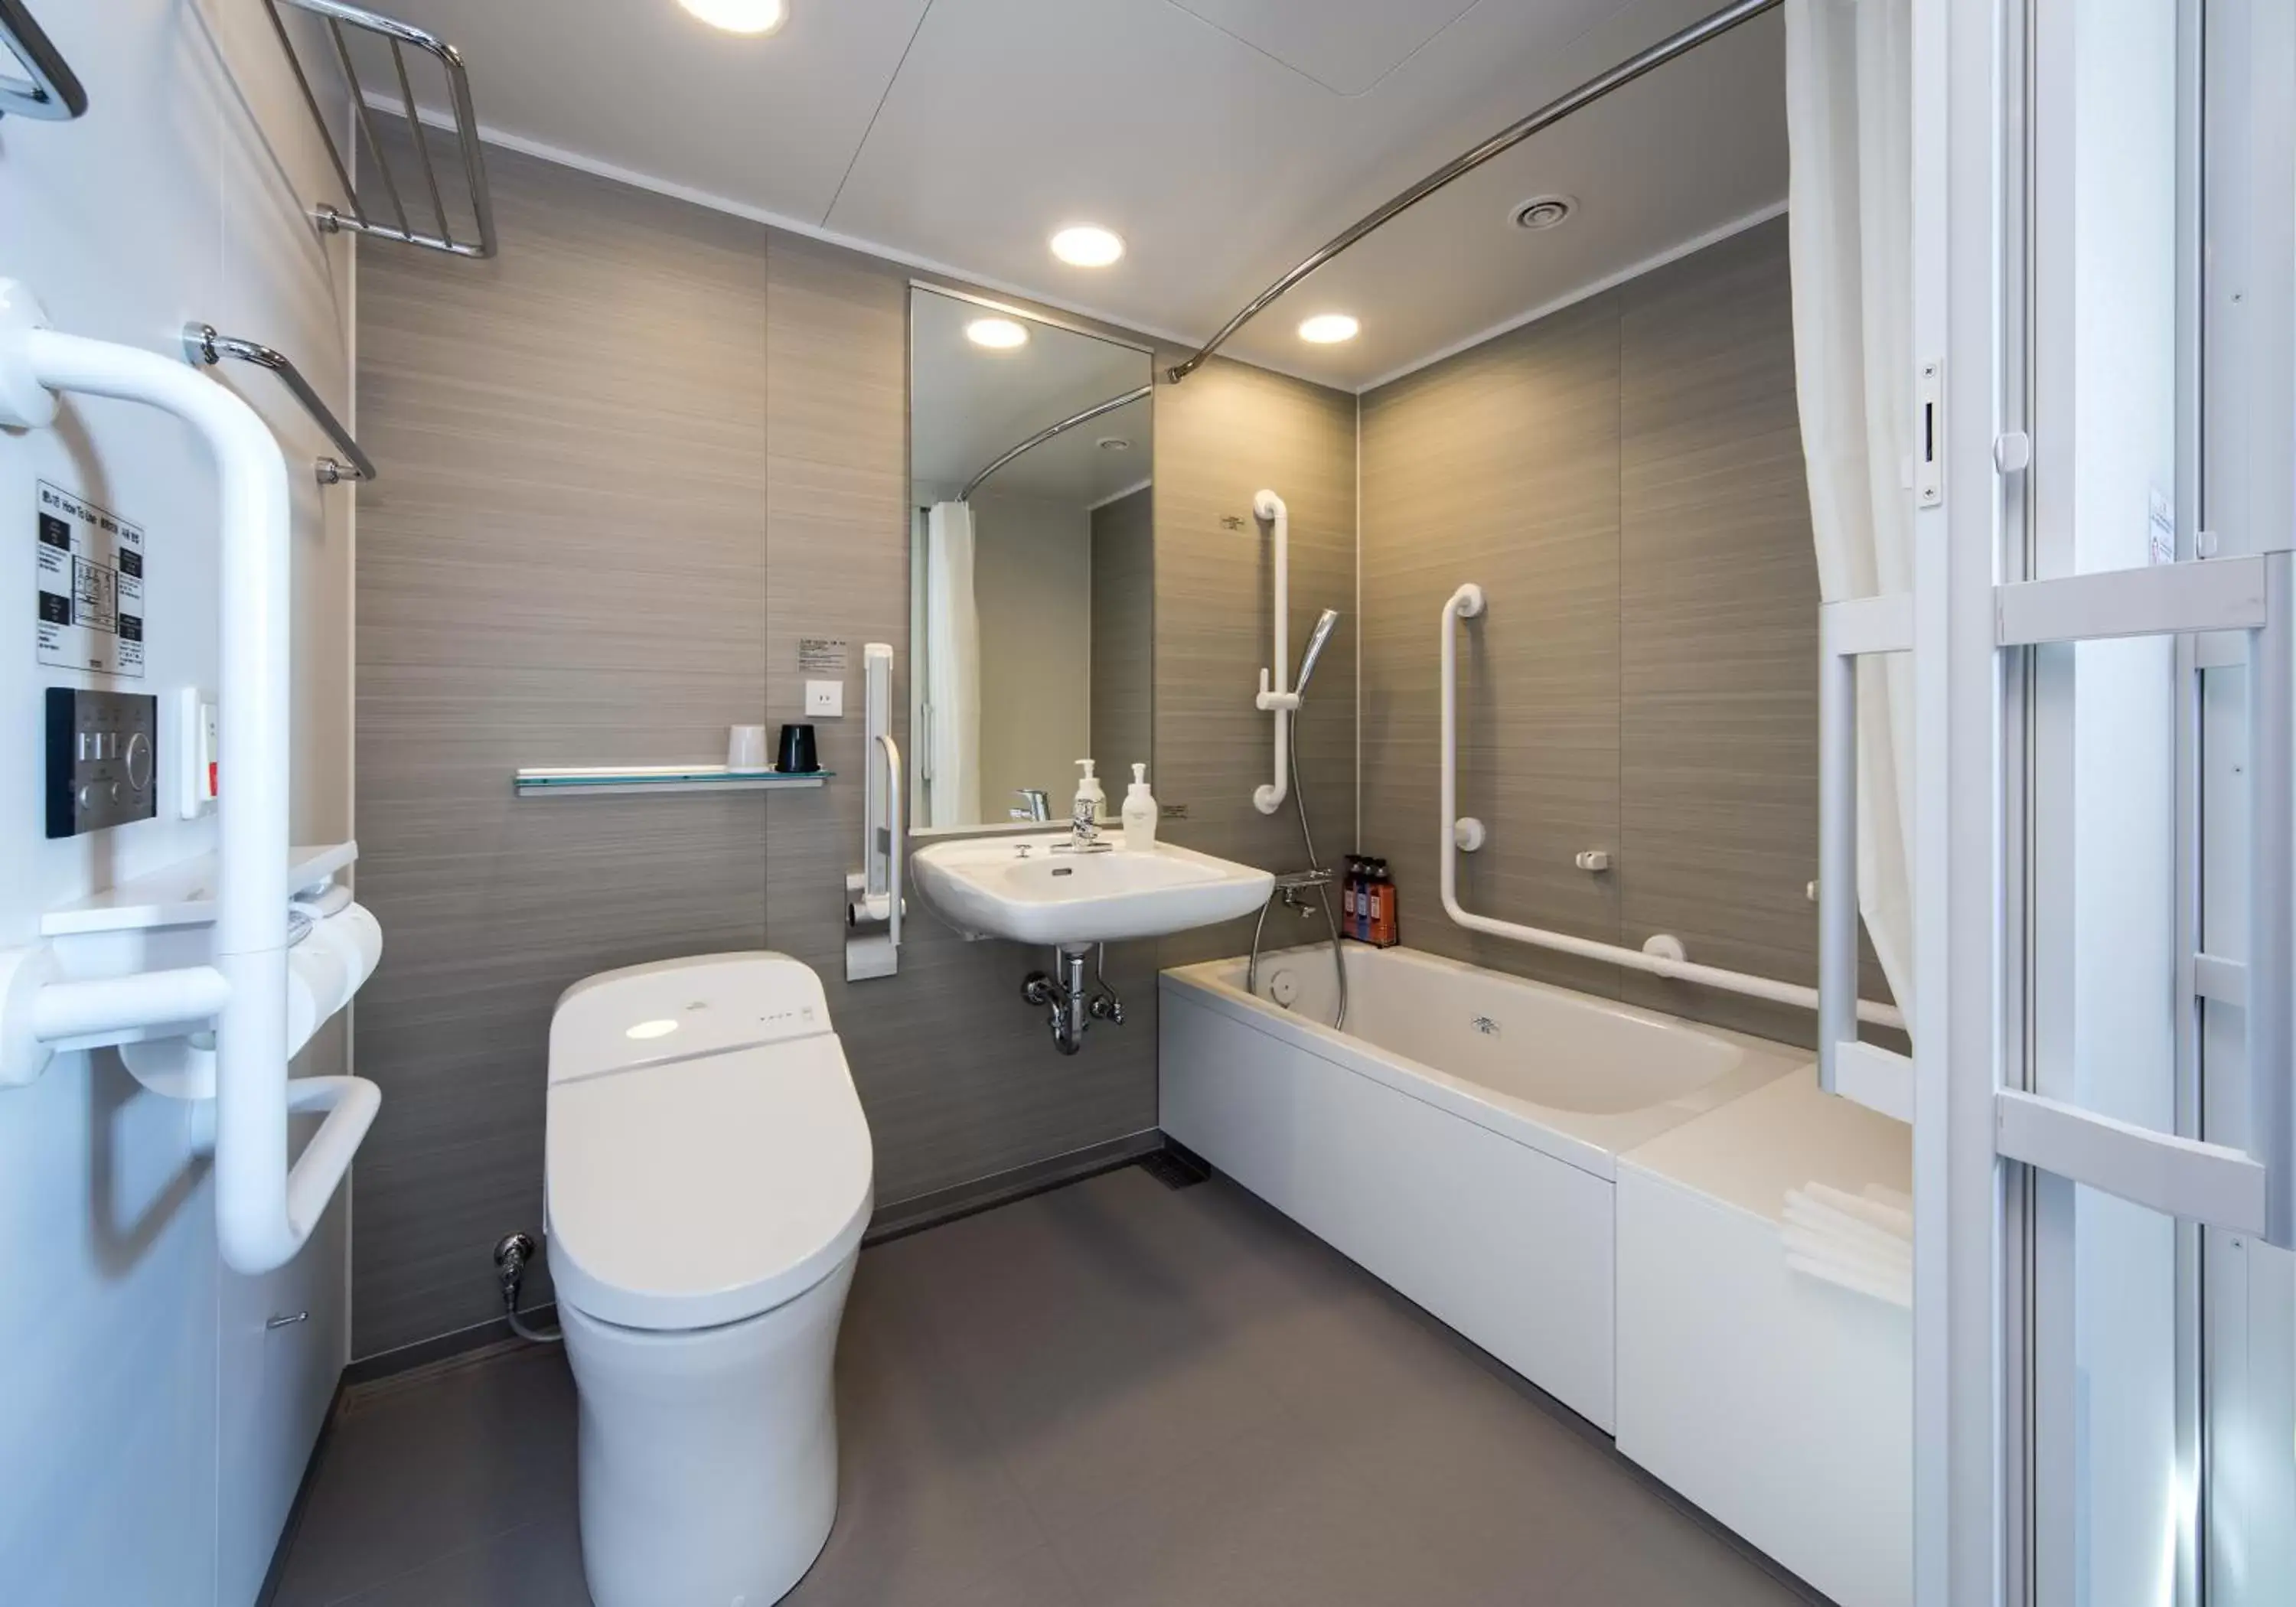 Area and facilities, Bathroom in Daiwa Roynet Hotel Chiba Ekimae